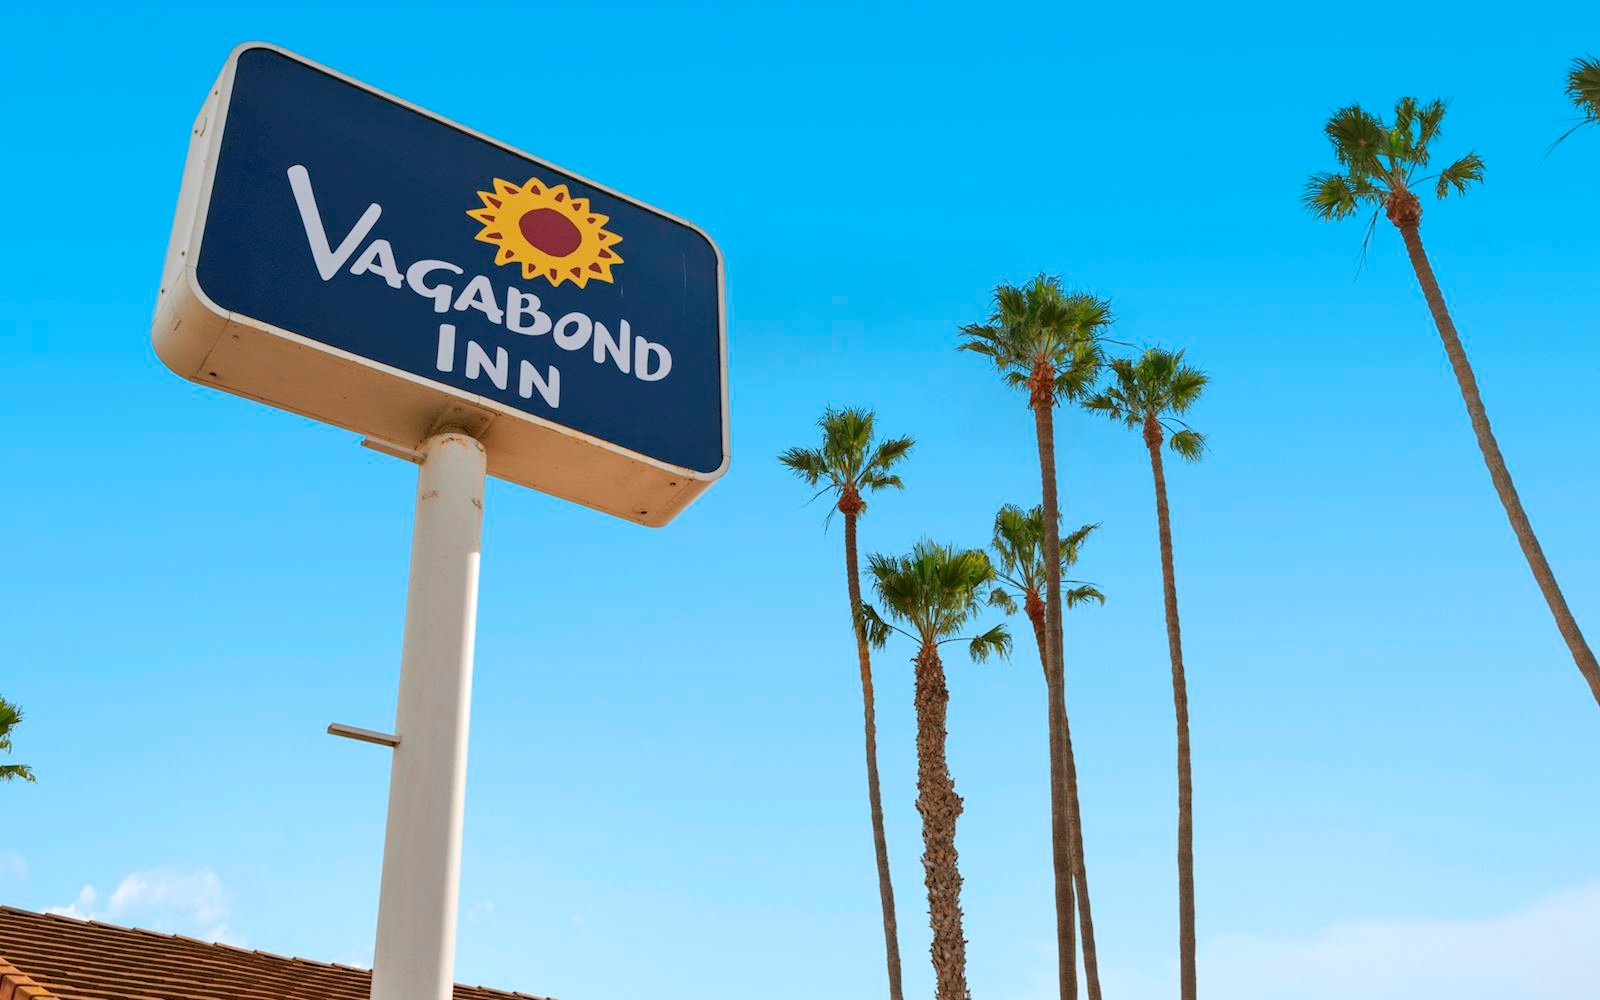 Vagabond Inn Hotels, California Franchise Opportunities